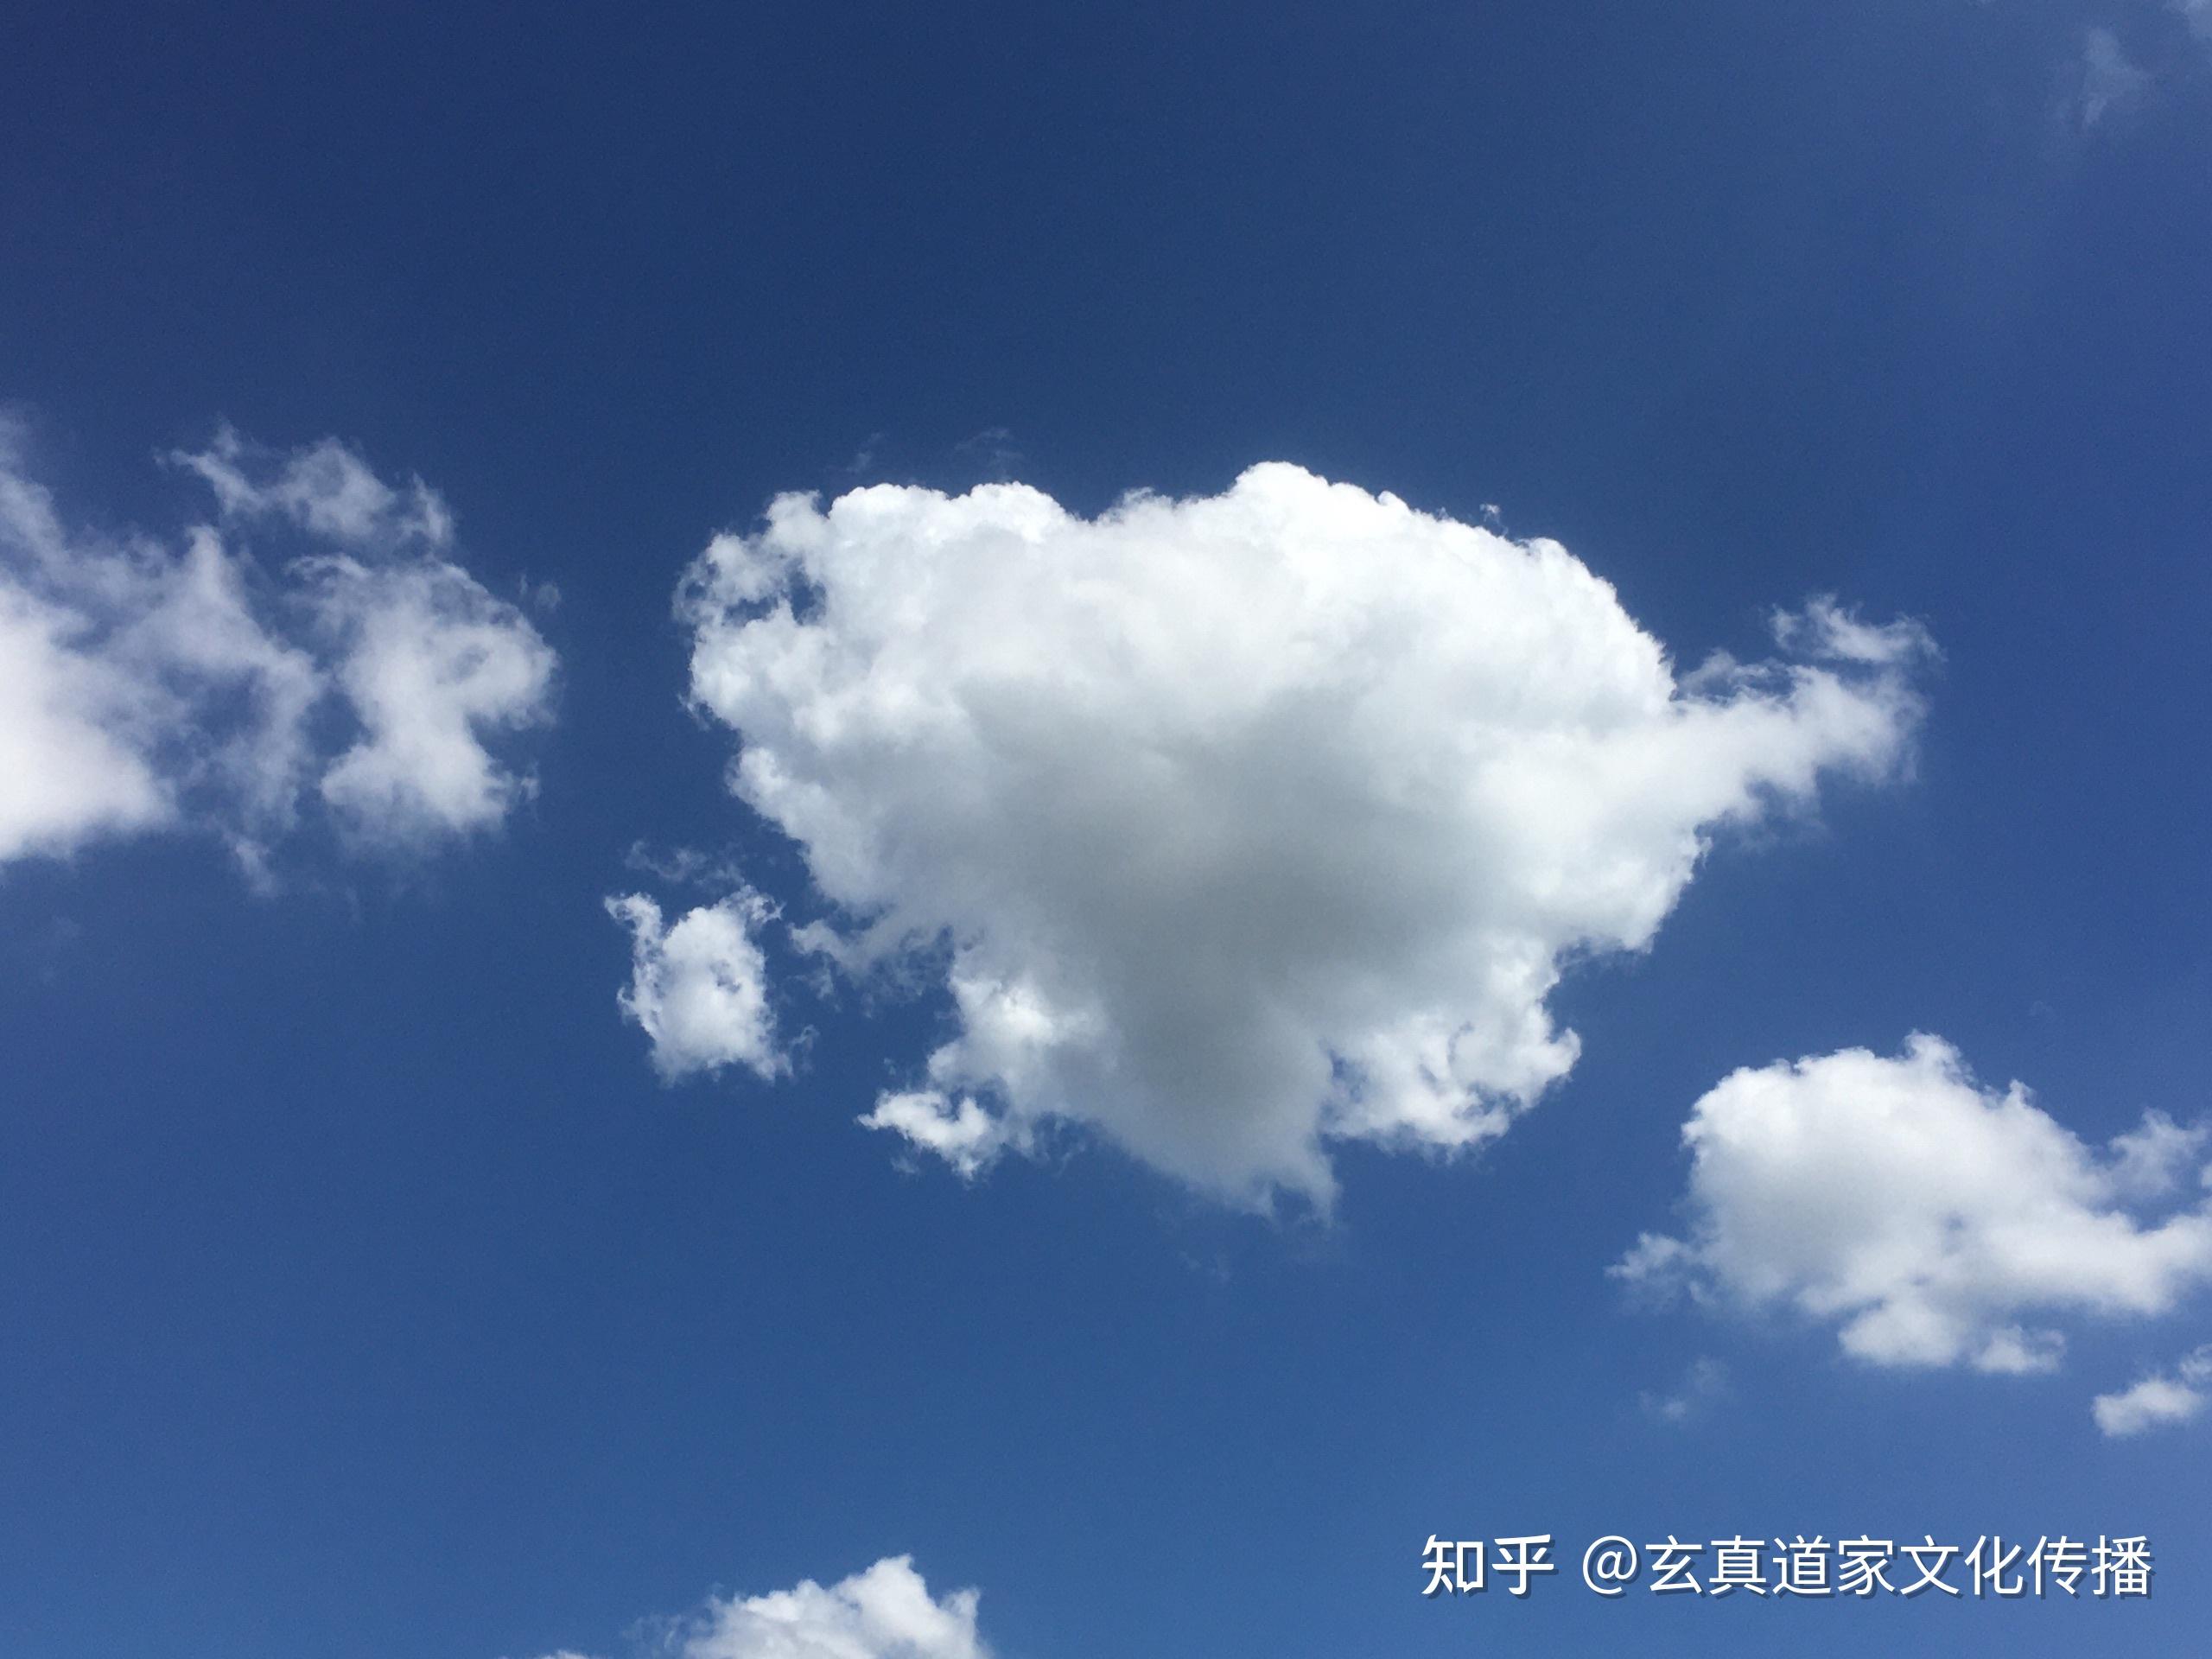 深圳的蓝天白云——棉花云太美了 - 知乎